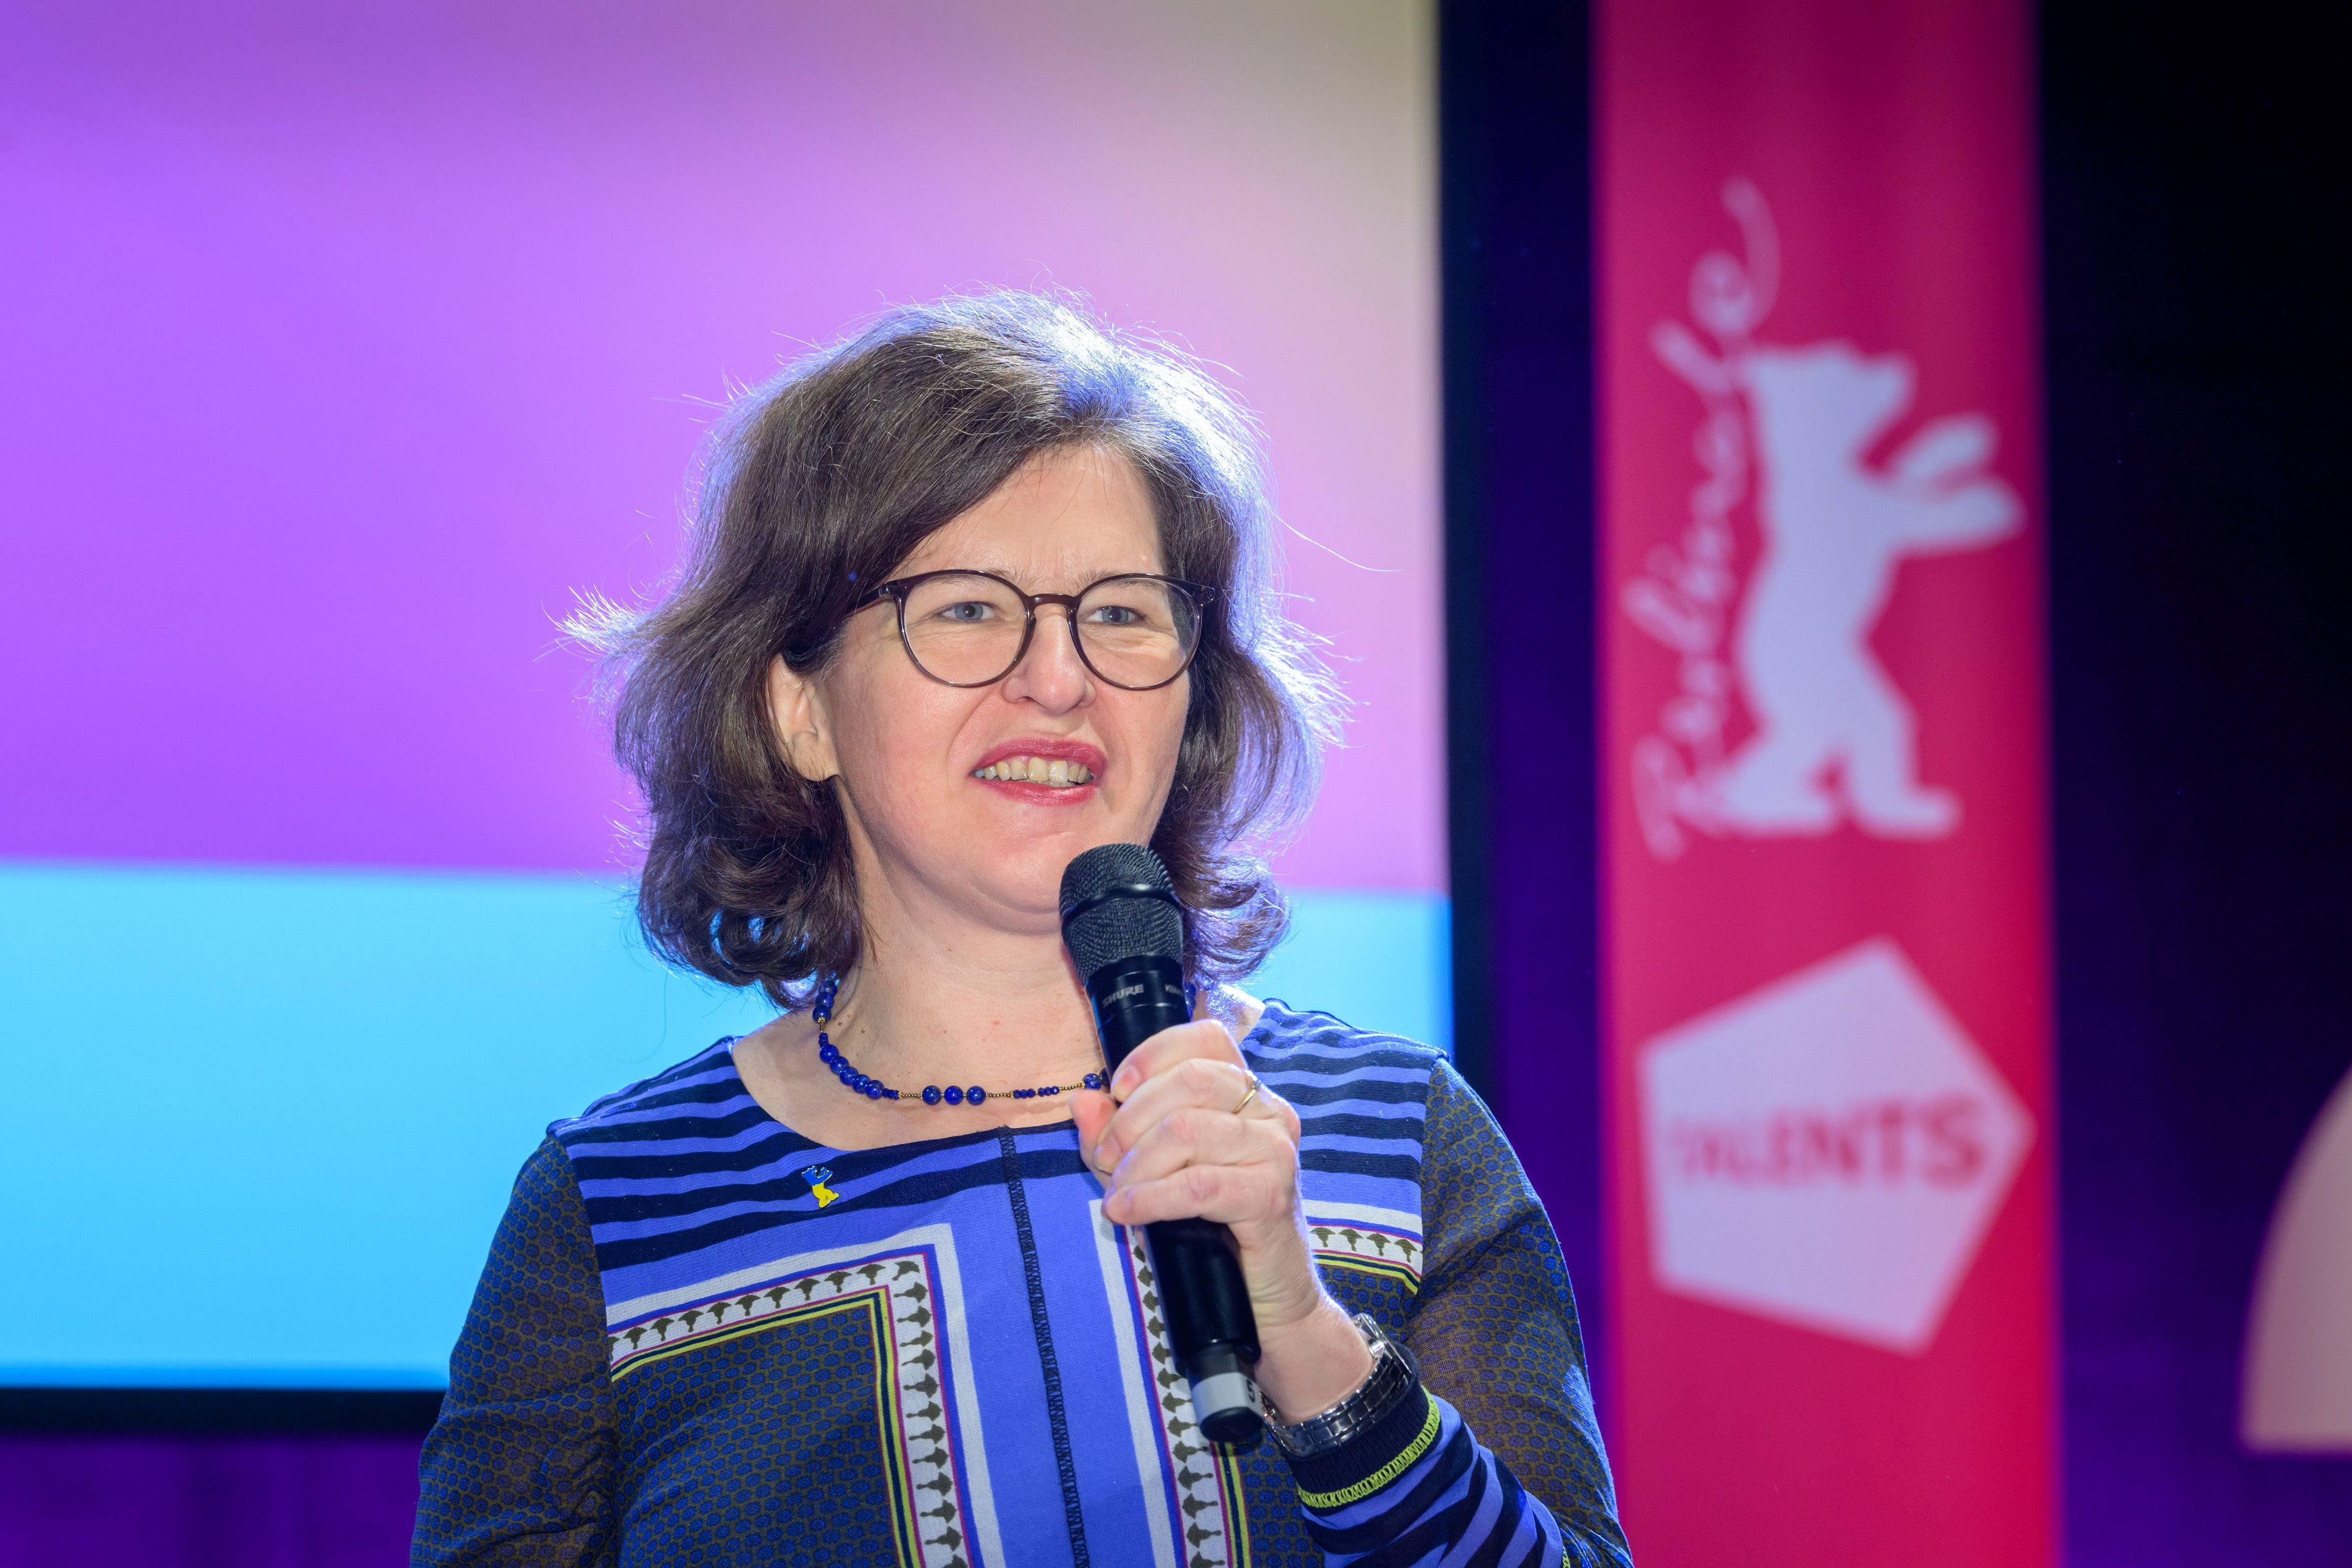 Christine Tröstrum gibt Leitung von Berlinale Talents ab